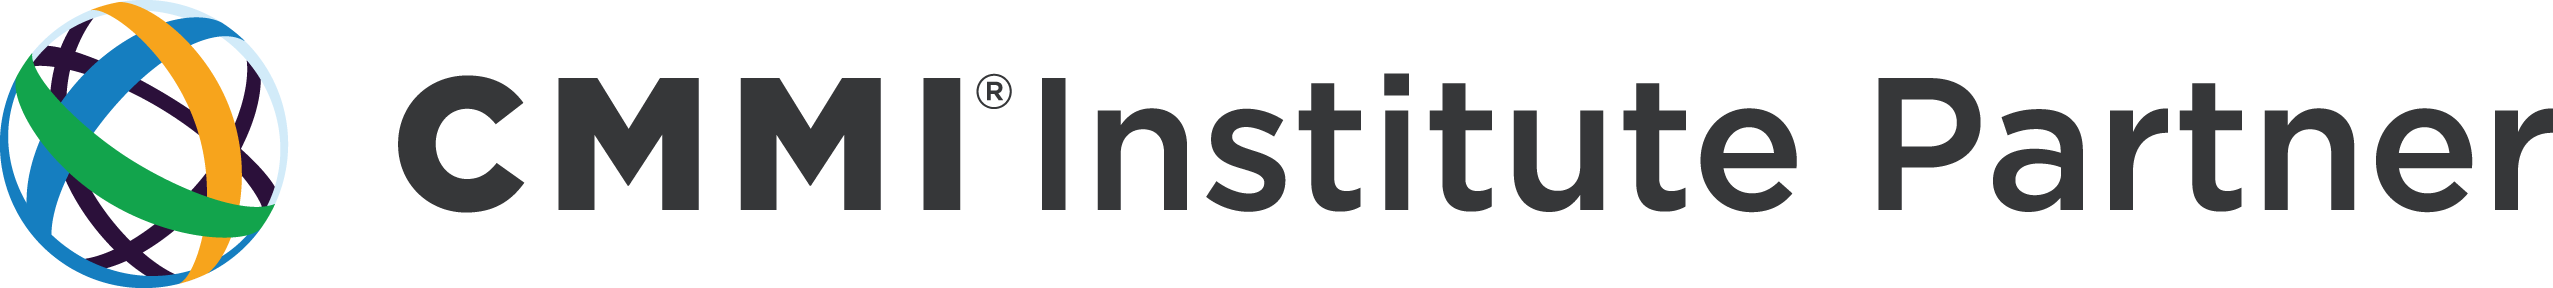 CMMI Institute Logo